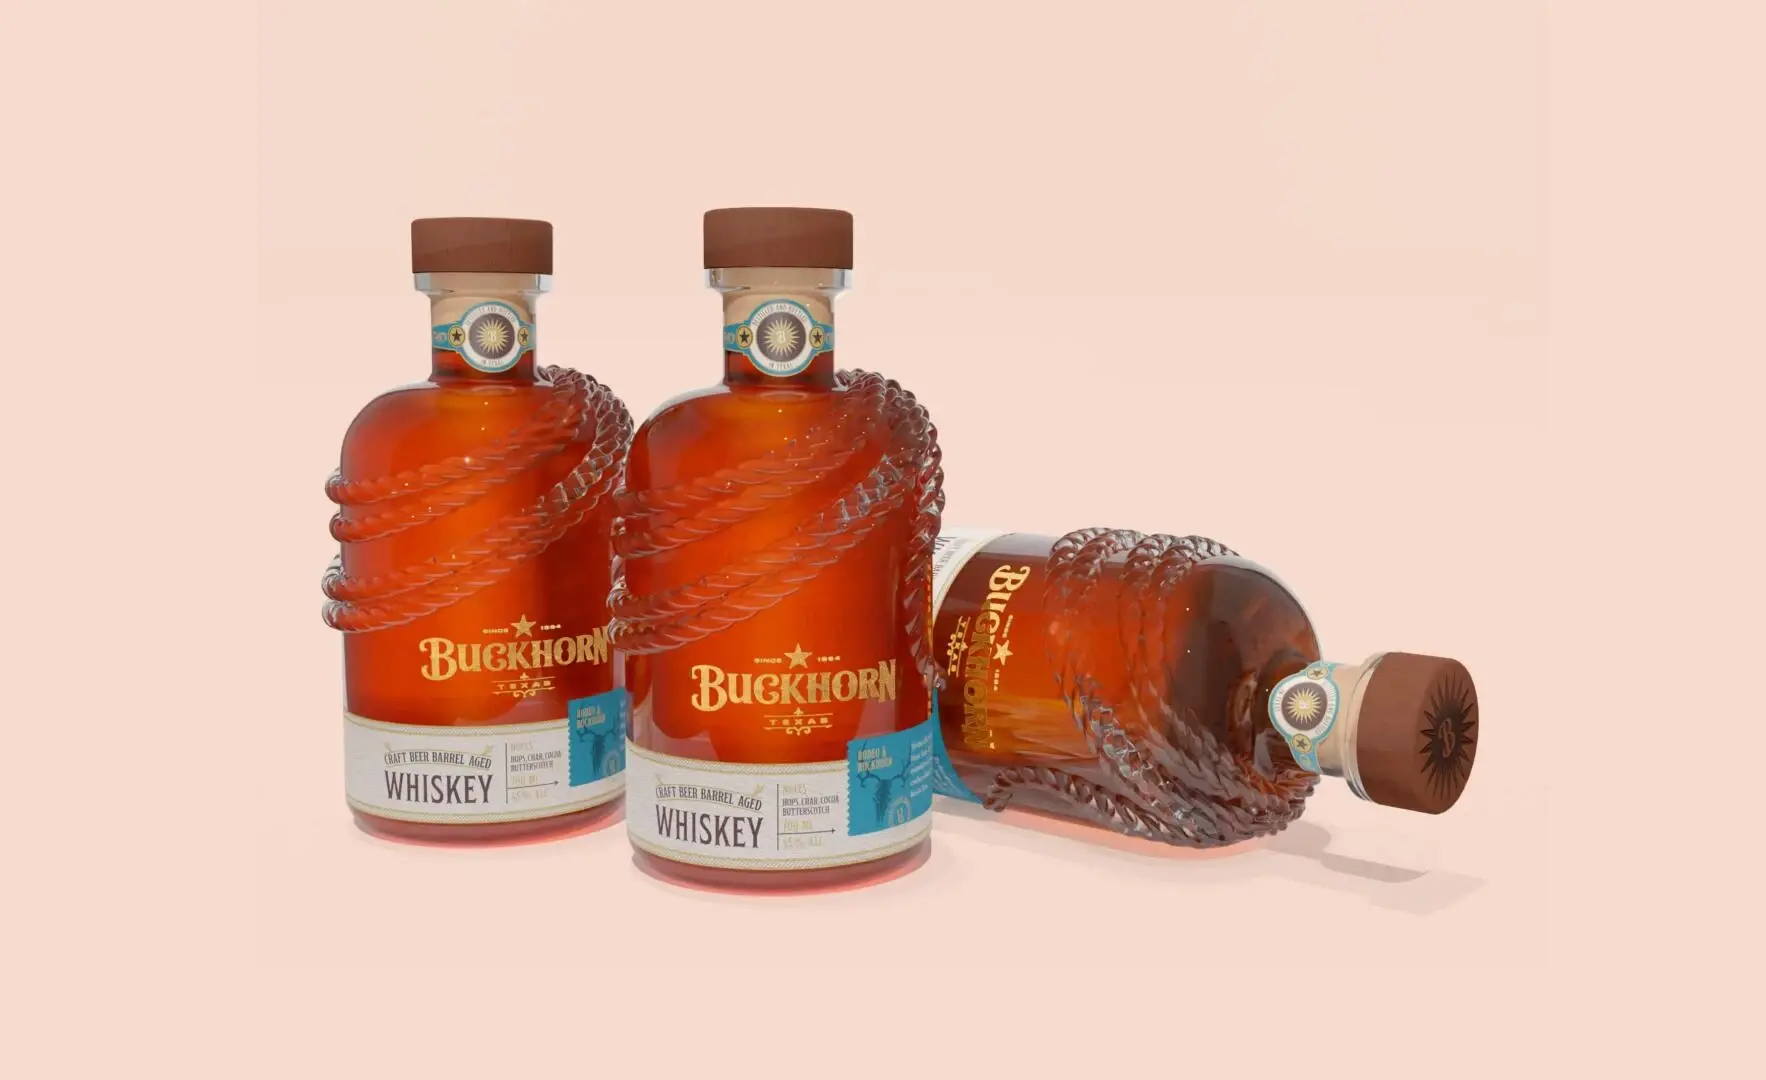 Blogduwebdesign packaging habillage bouteille original buckhorn